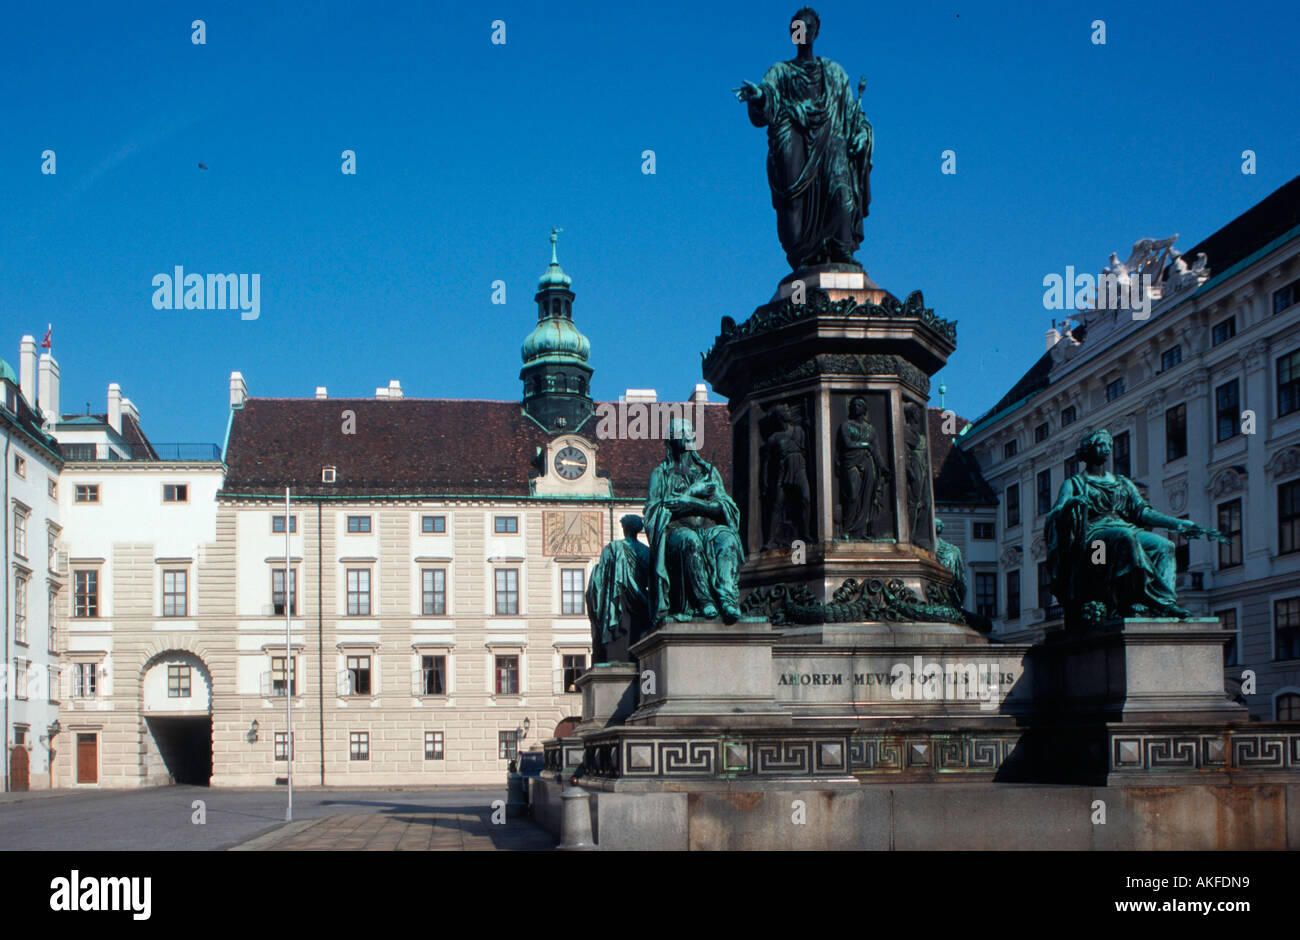 Österreich, Wien, viscerale Burghof (Amalienhof) mit Amalientrakt und Bronzestandbild von Kaiser Franz I. Foto Stock